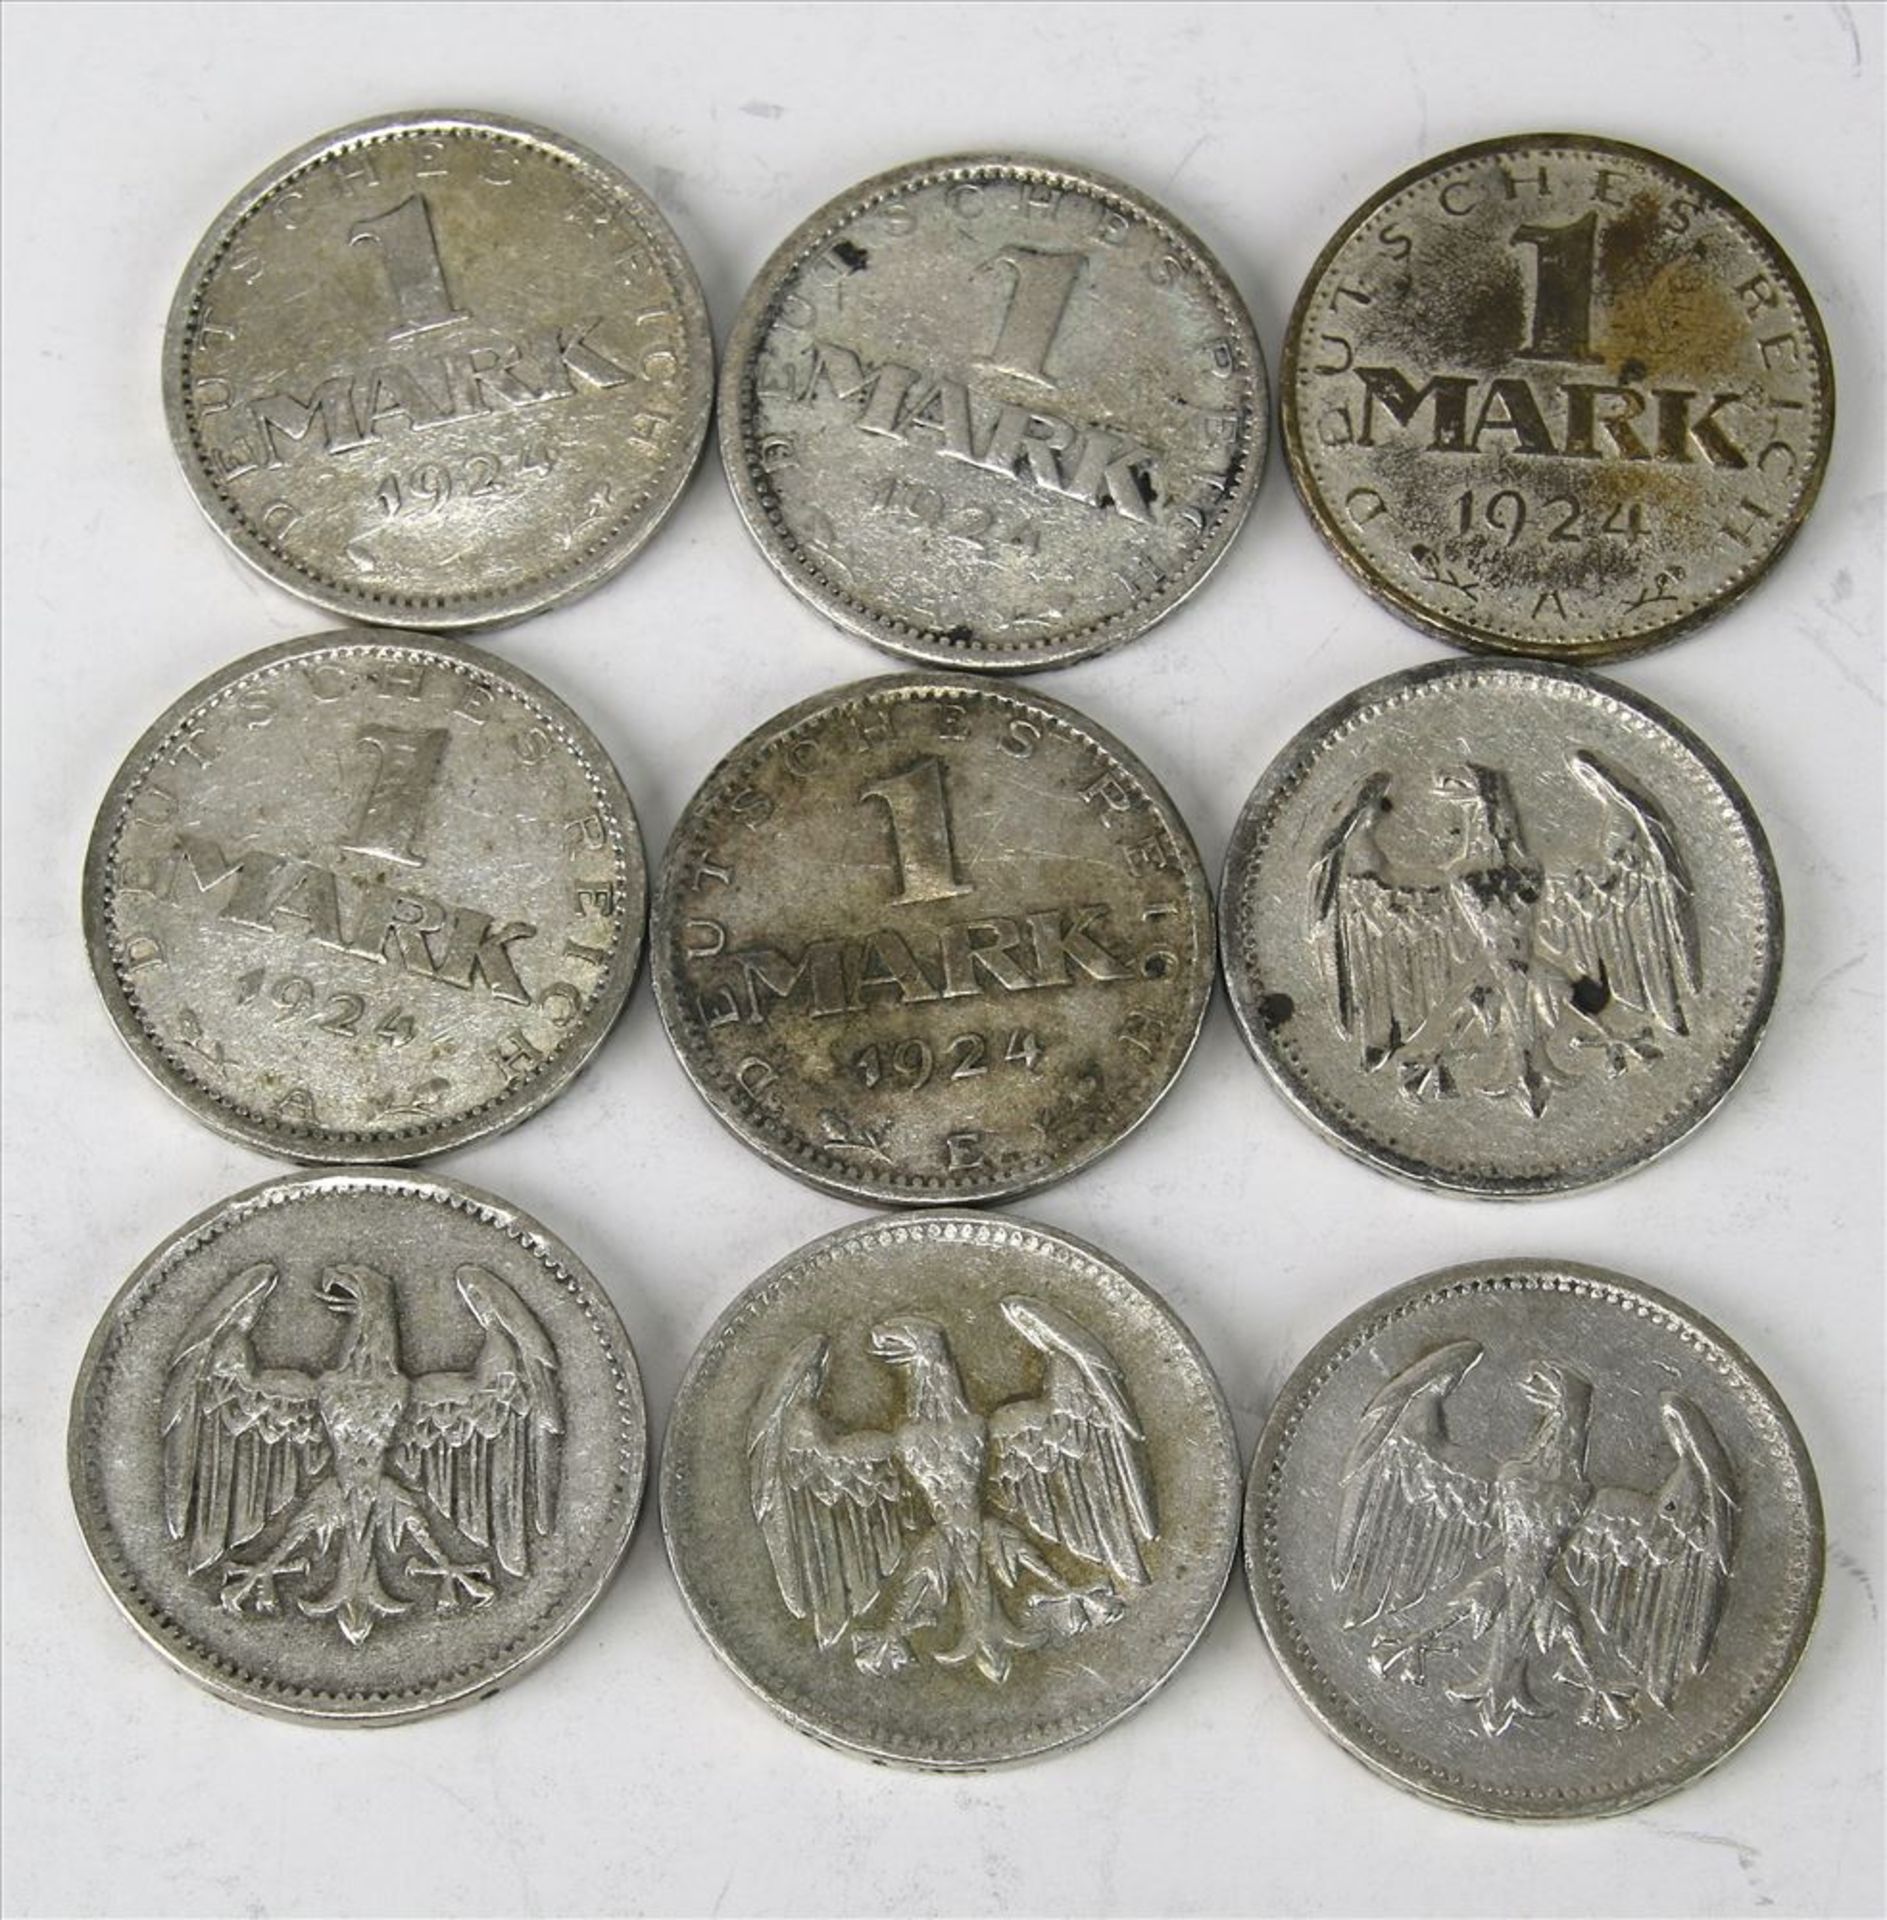 9 Münzen 1 Mark Deutsches Reich, Weimarer Republik 1924. Unterschiedliche Zustände.